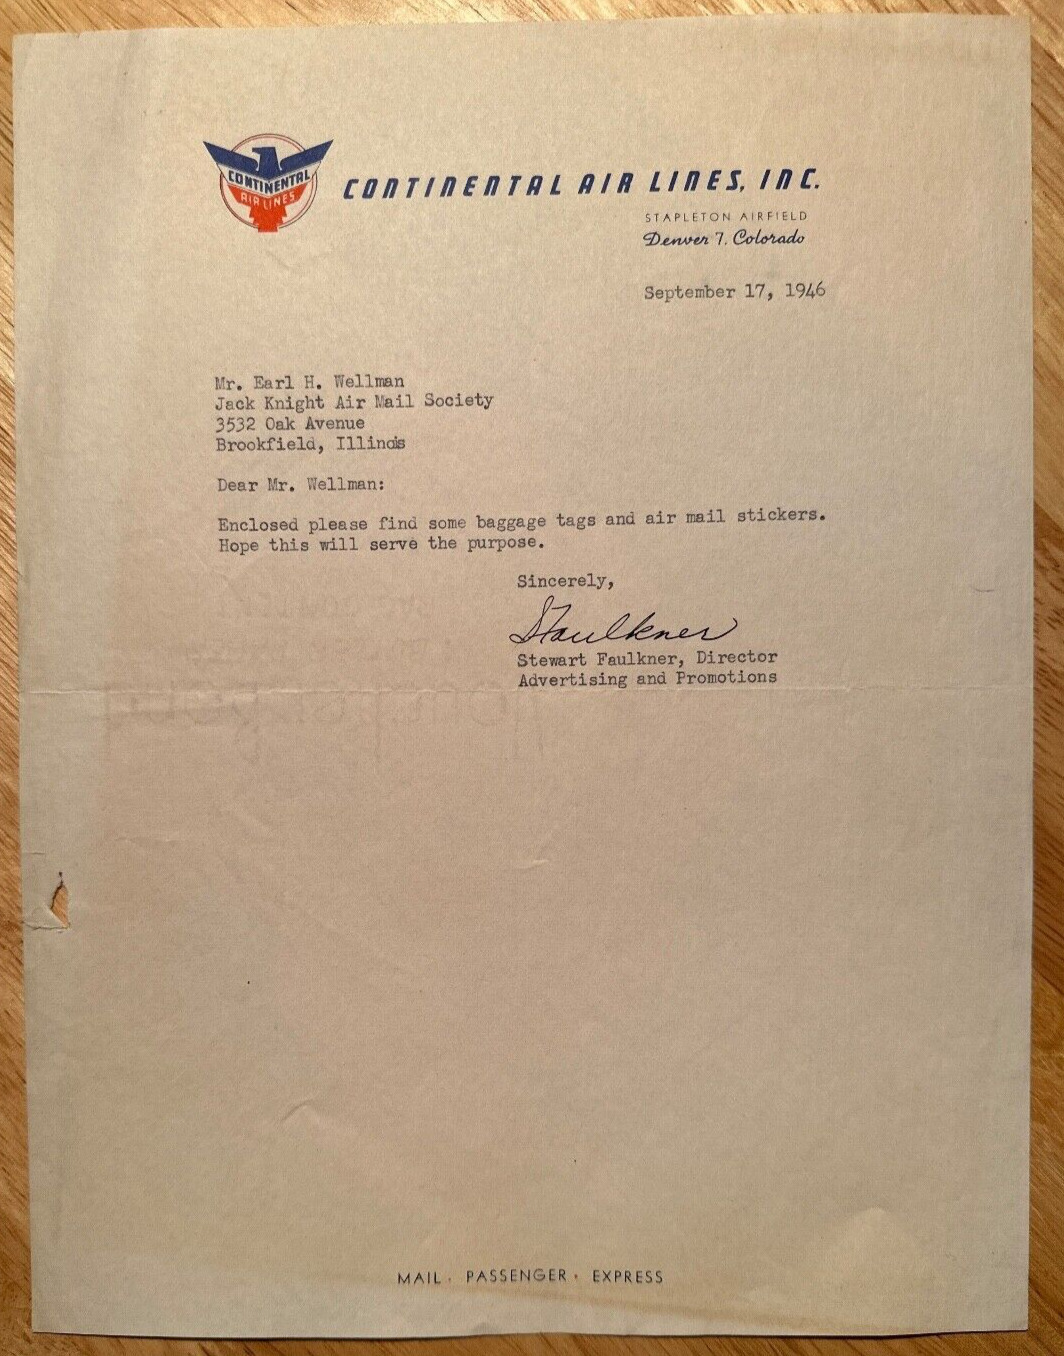 Continental Airlines - 1946 Denver, CO. vintage business letter